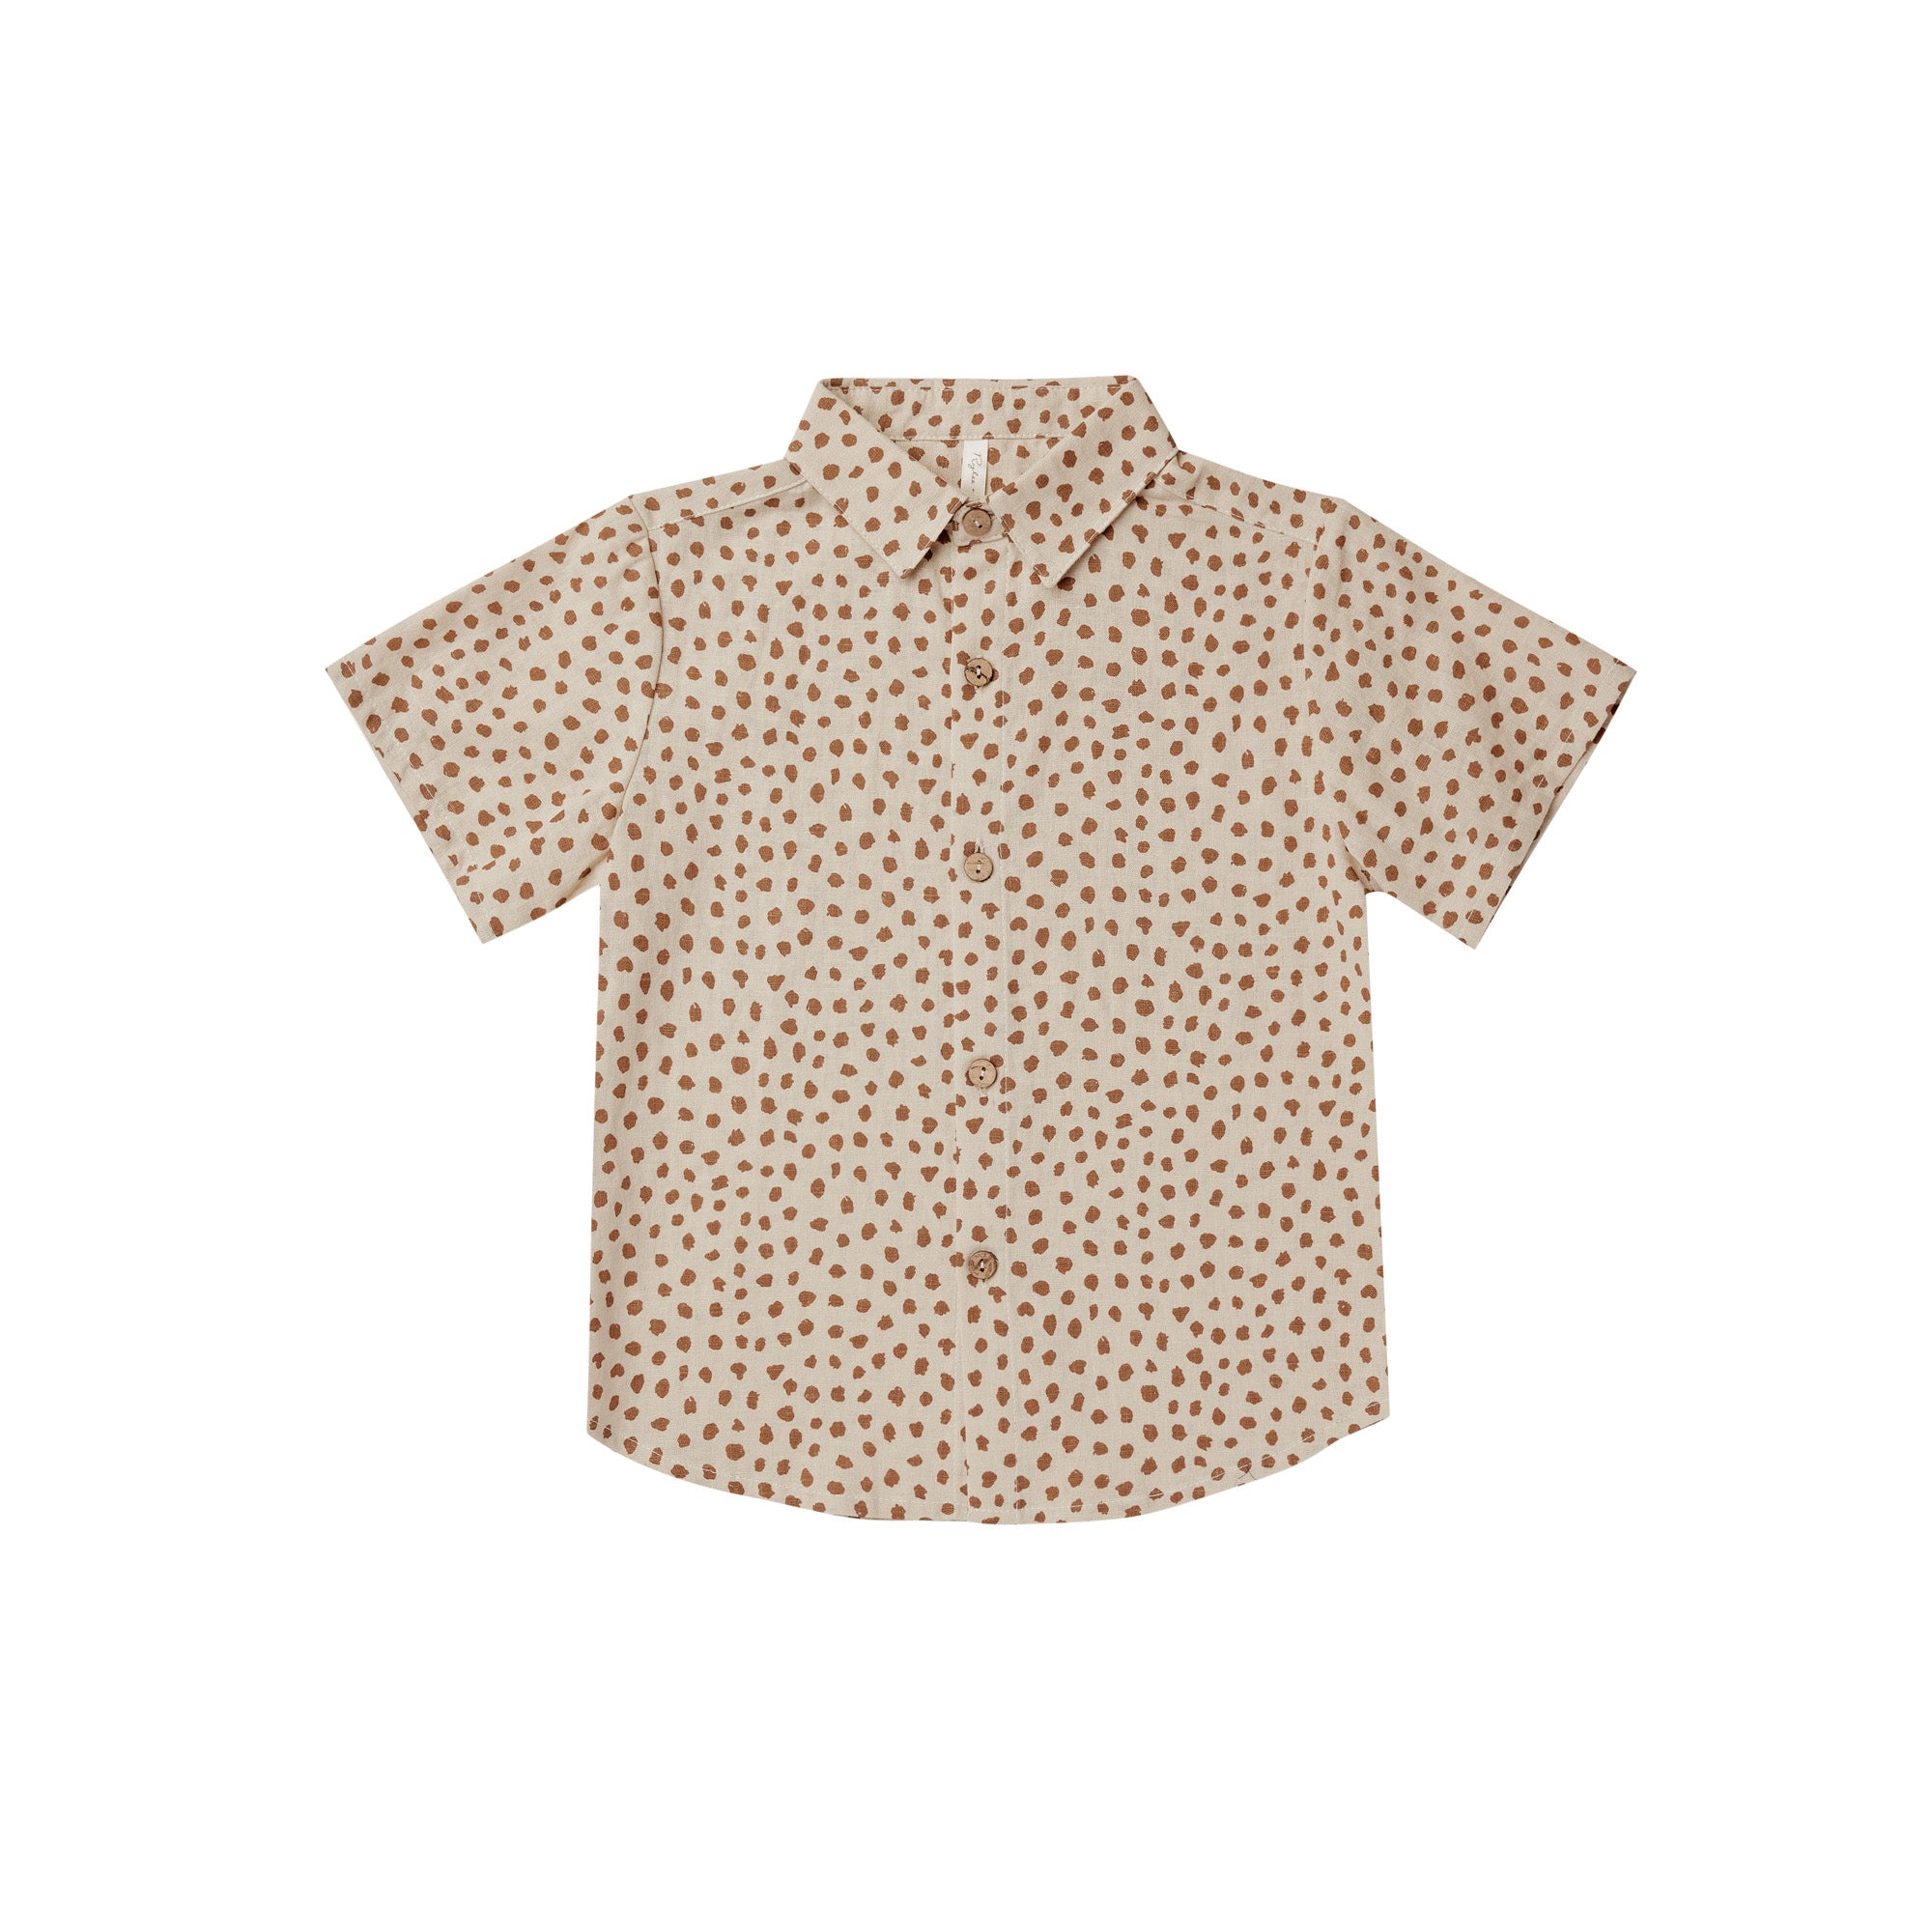 Rylee + Cru_Collard Short Sleeve Shirt Spots_Tops